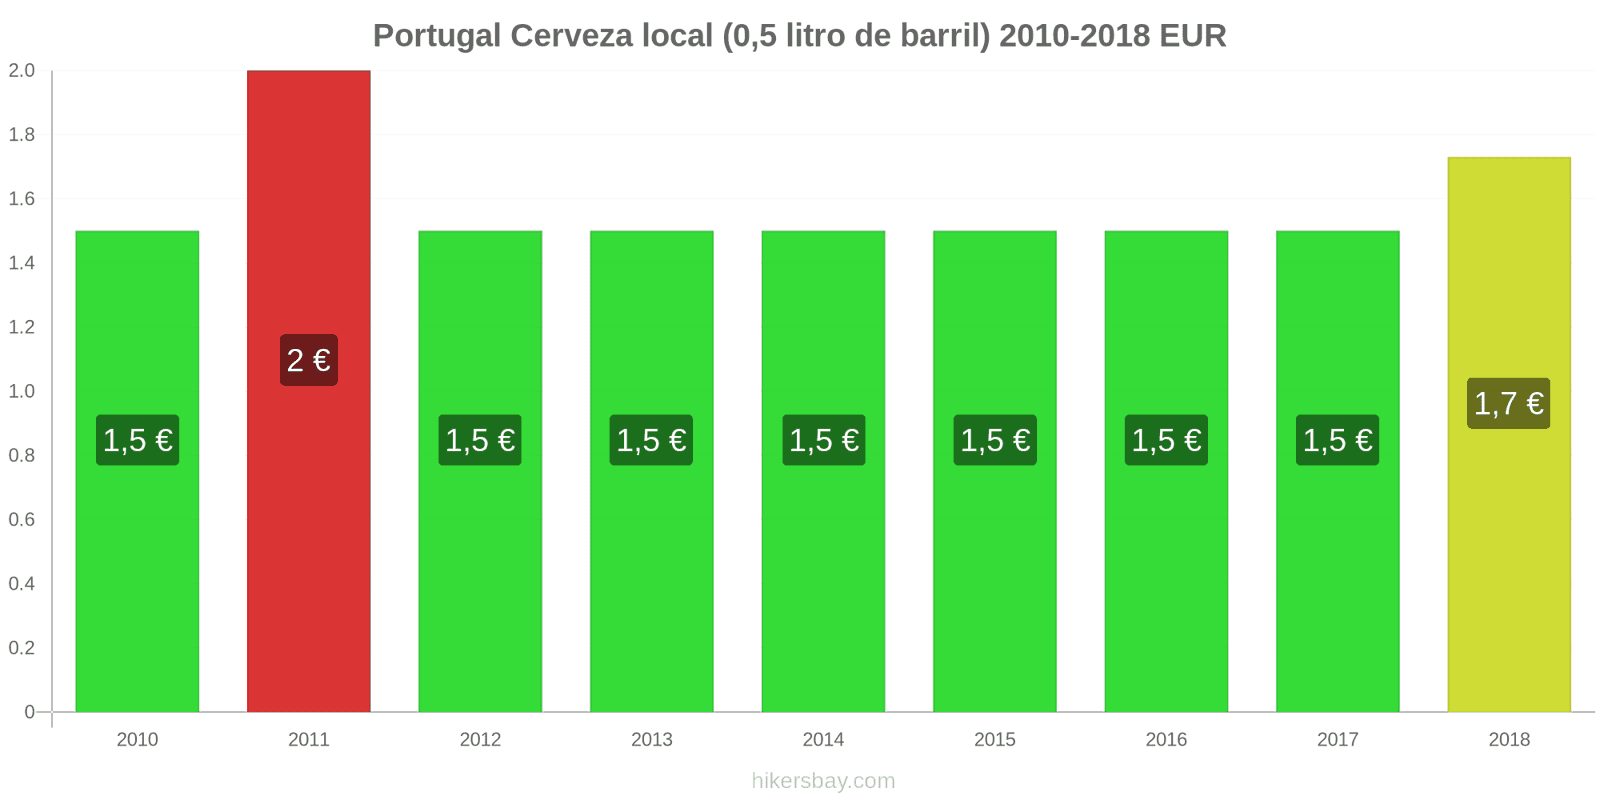 Portugal cambios de precios Cerveza de barril (0,5 litros) hikersbay.com